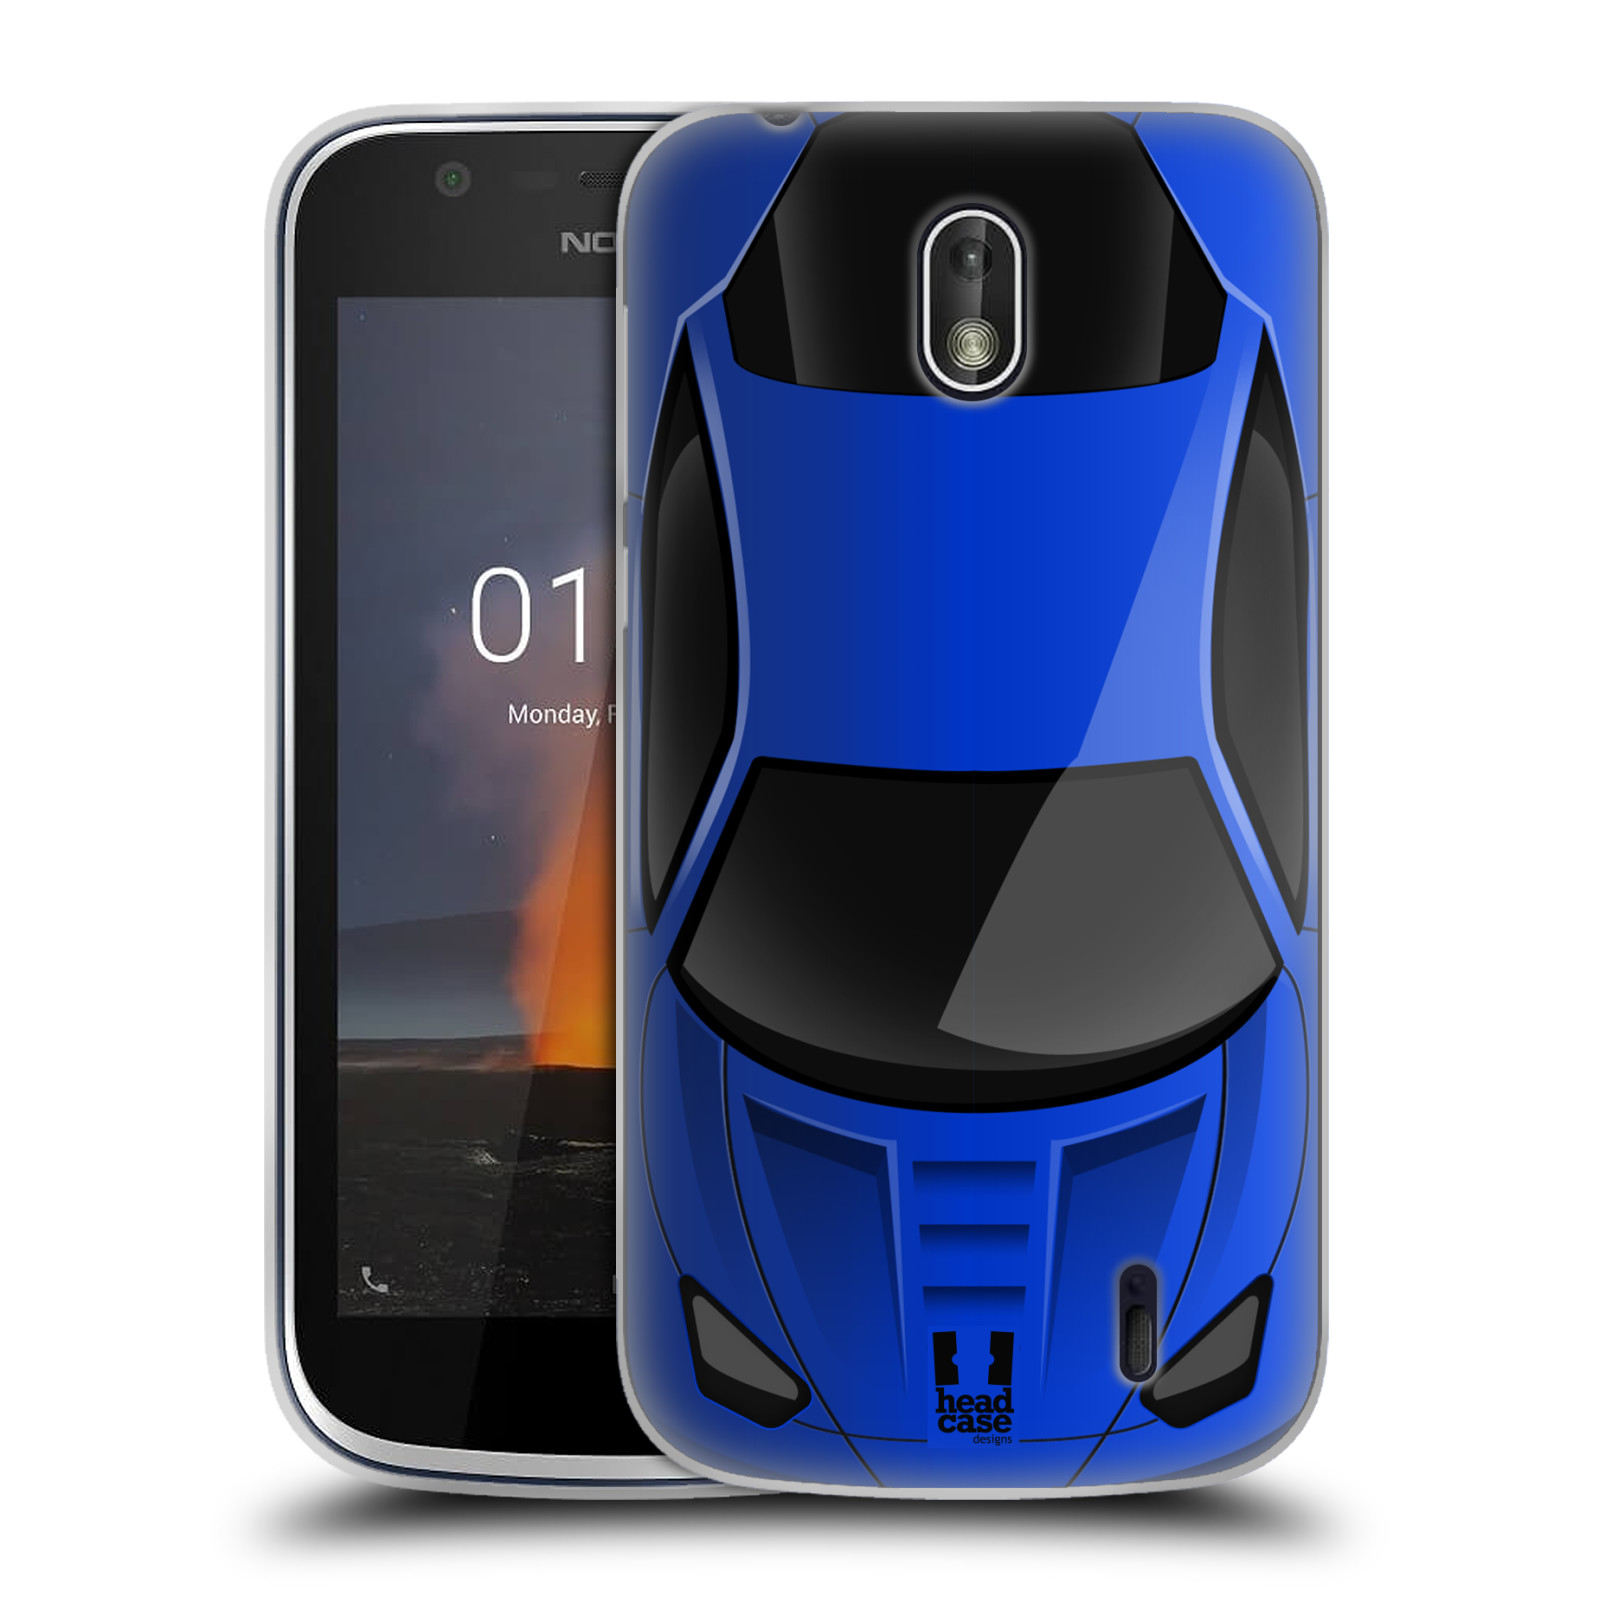 HEAD CASE silikonový obal na mobil Nokia 1 vzor Auto horní pohled modrá